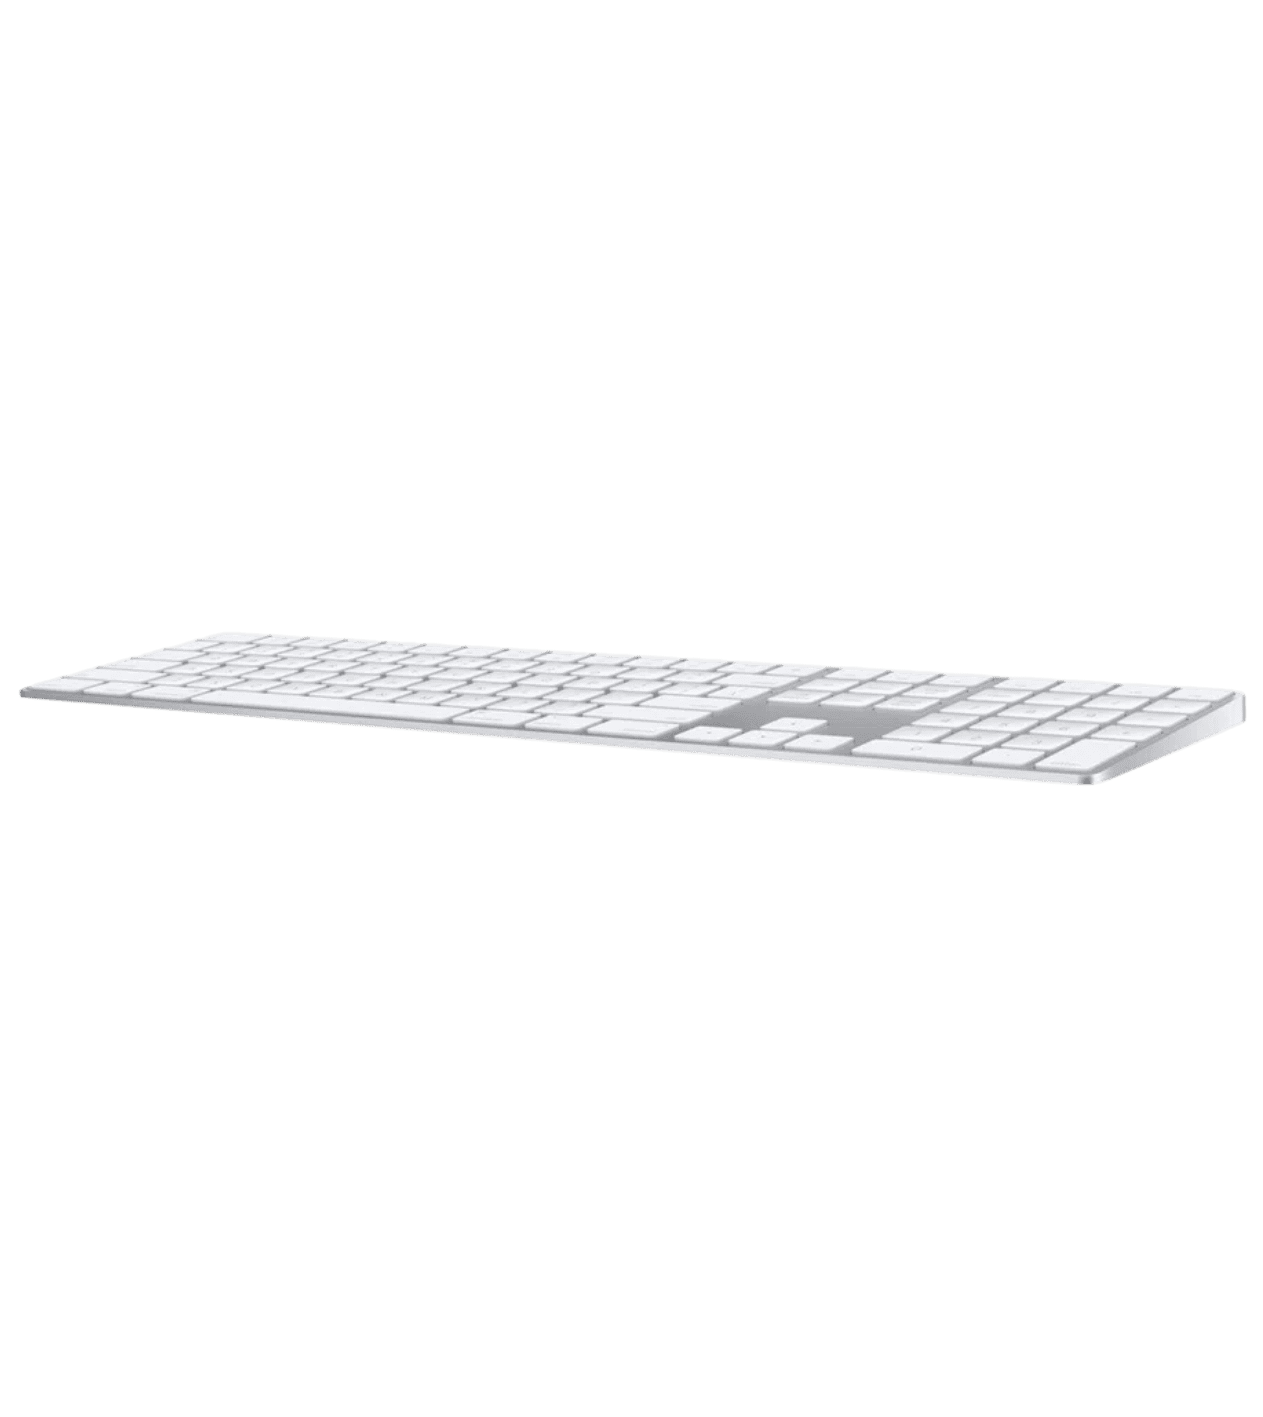 Клавиатура Apple Magic Keyboard with Numeric Keypad